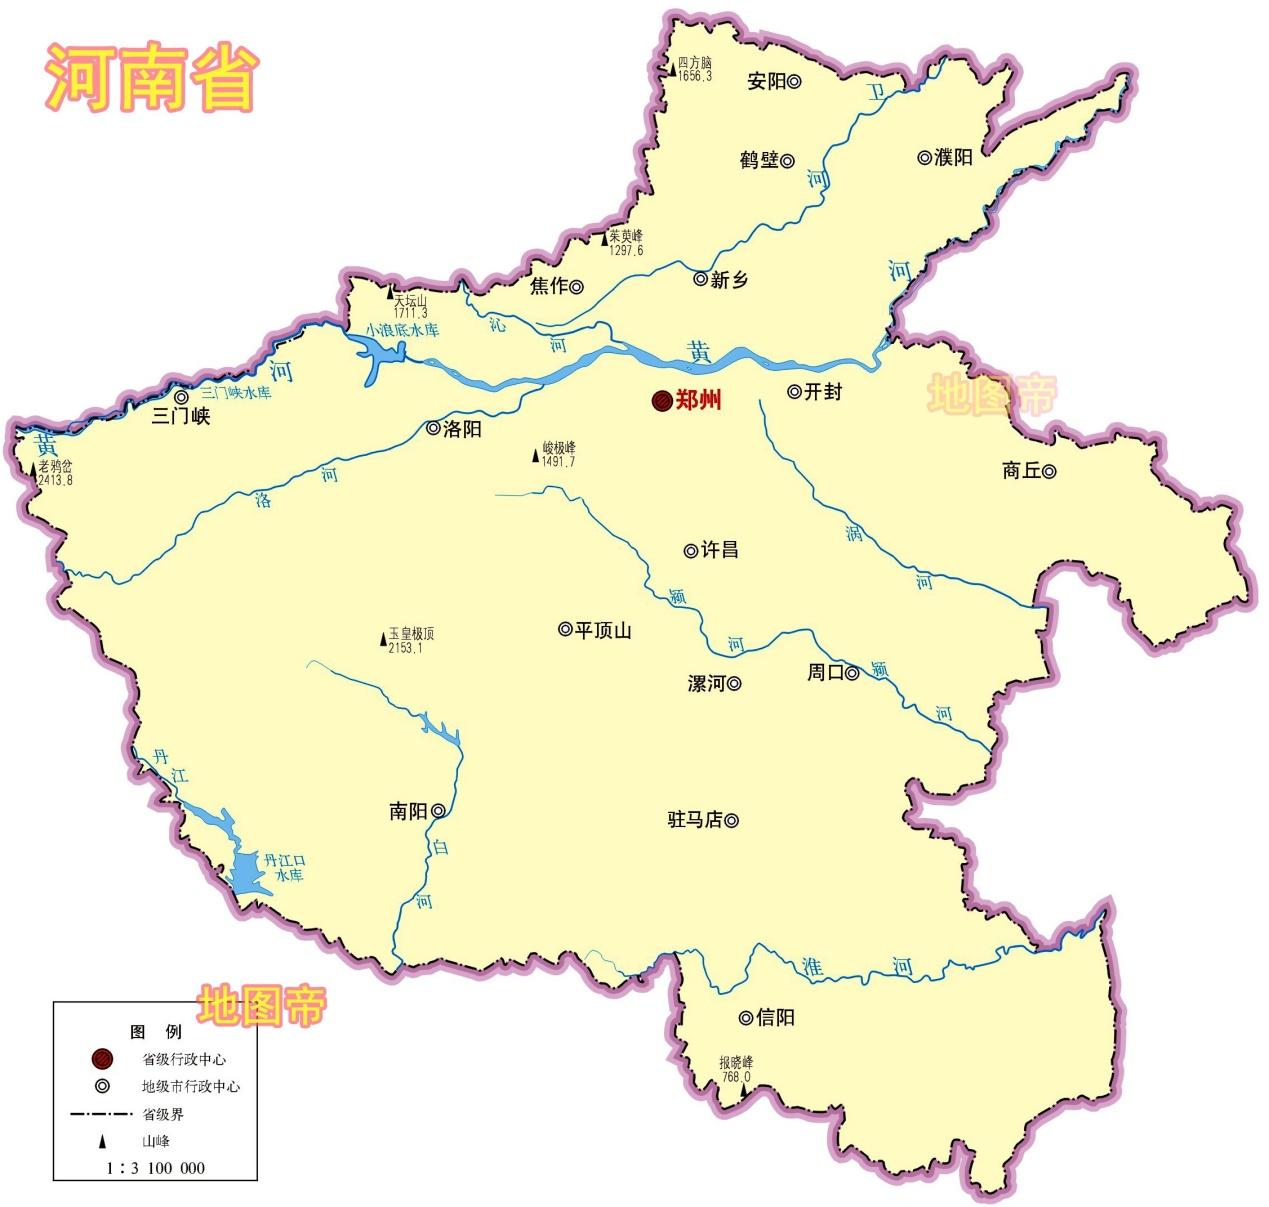 河南省地图|河南省地图全图高清版大图片|旅途风景图片网|www.visacits.com